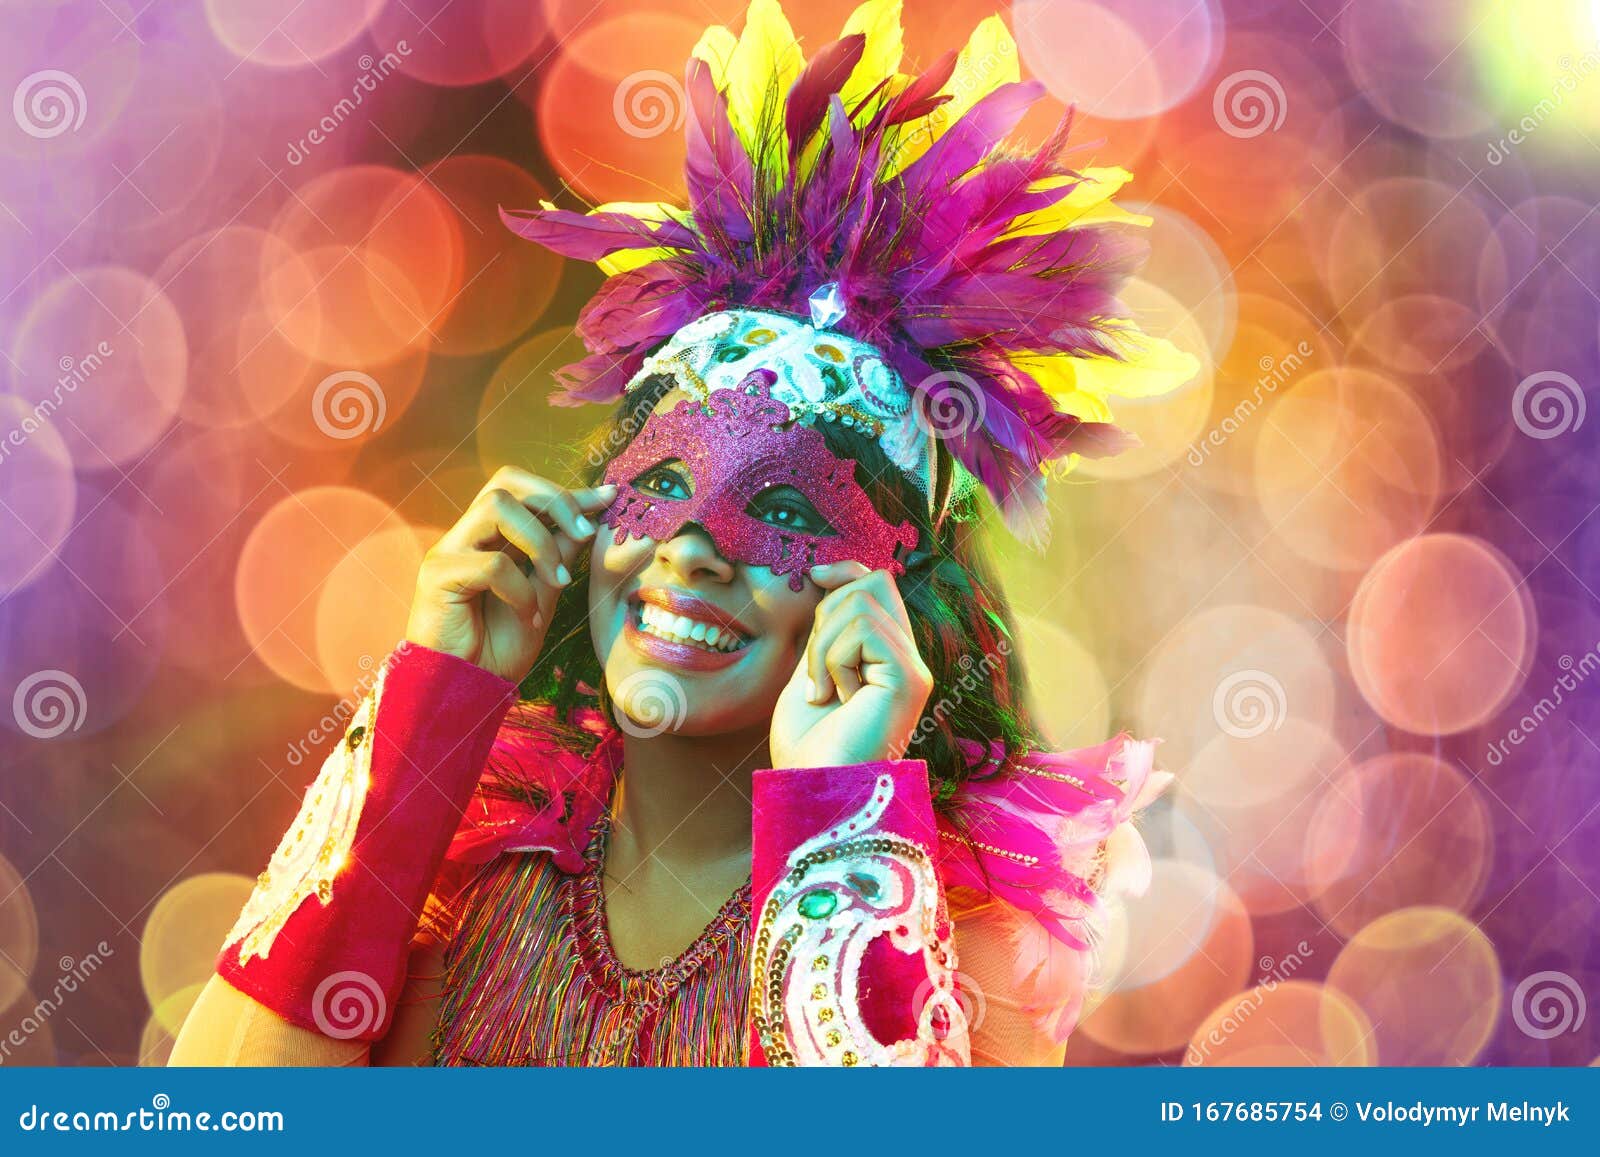 Hermosa joven en carnaval con disfraz de plumas